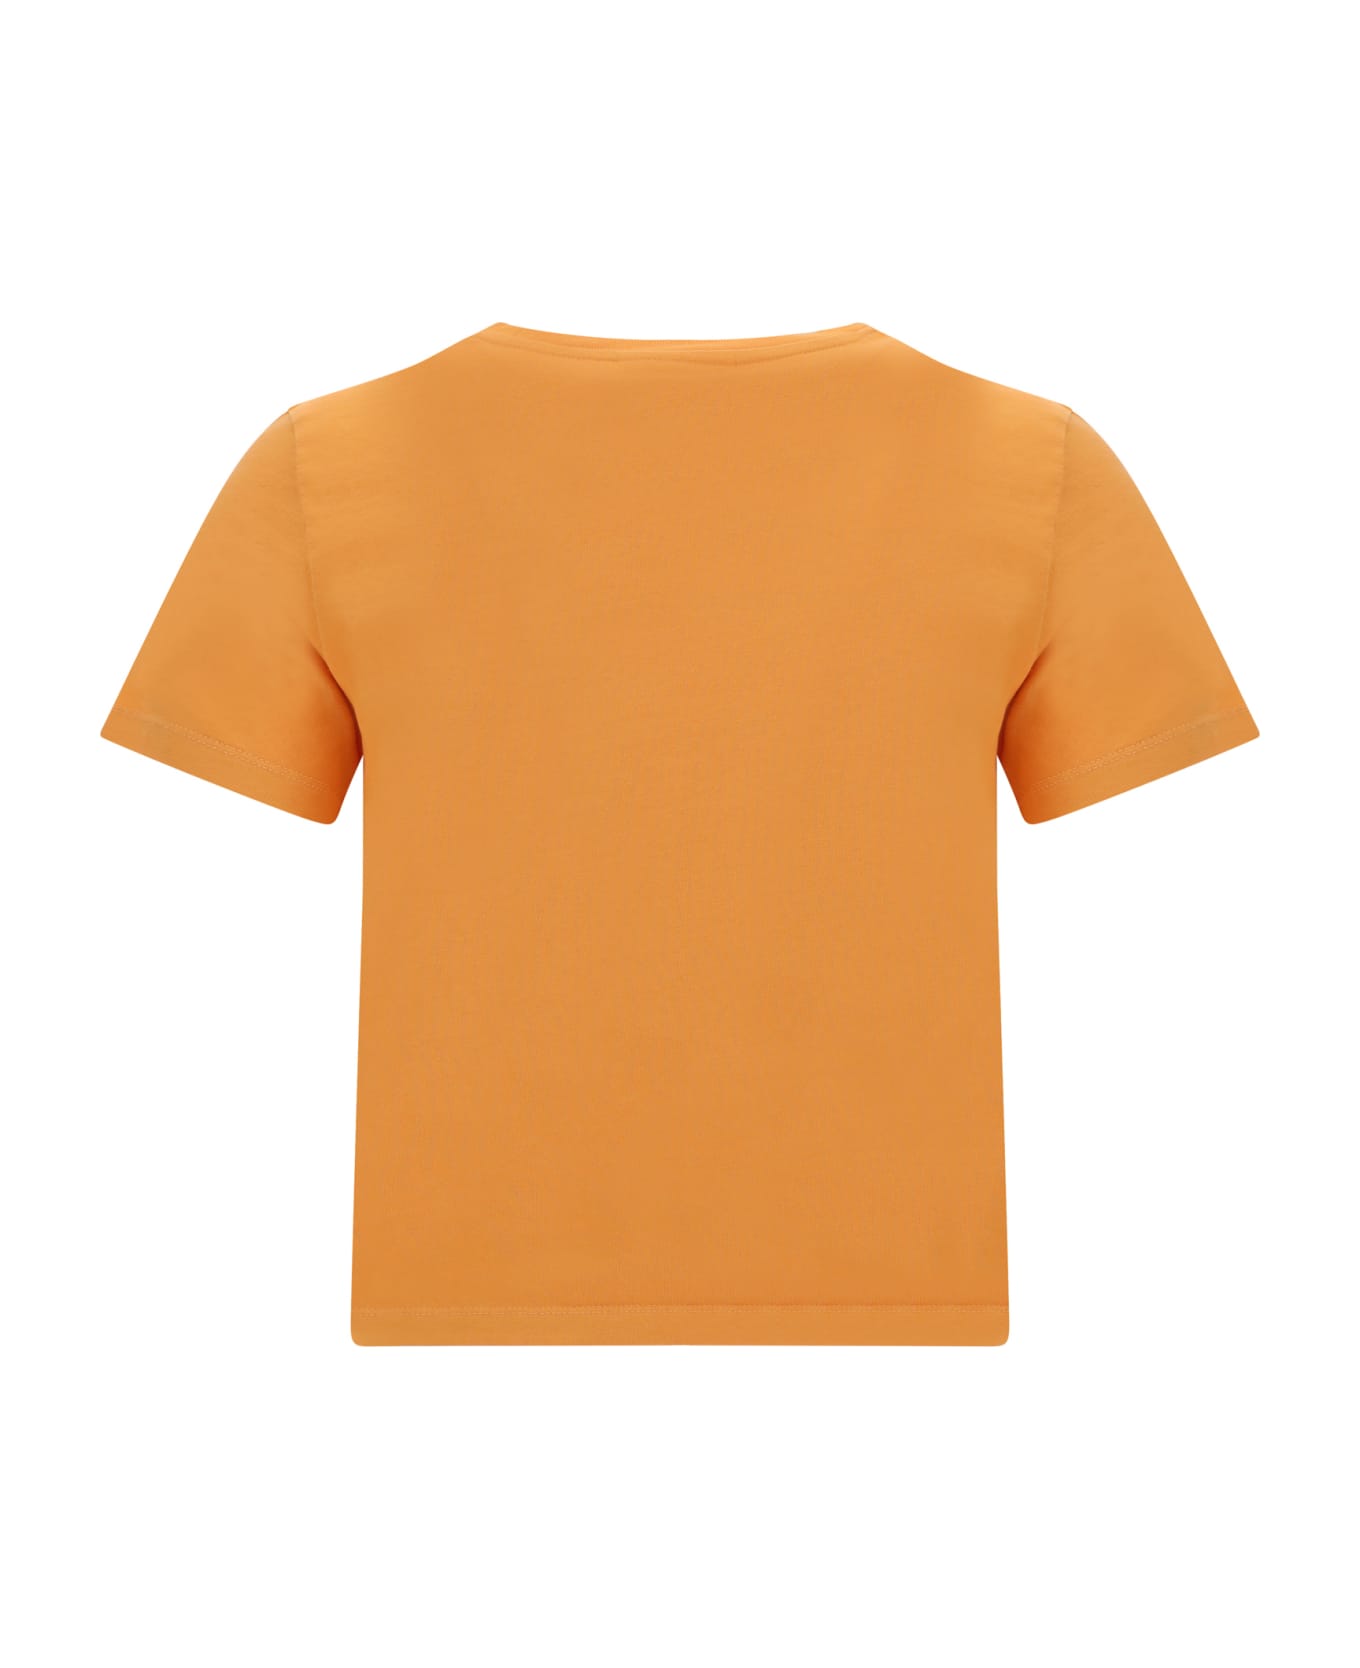 Maison Kitsuné T-shirt - Sunset Orange